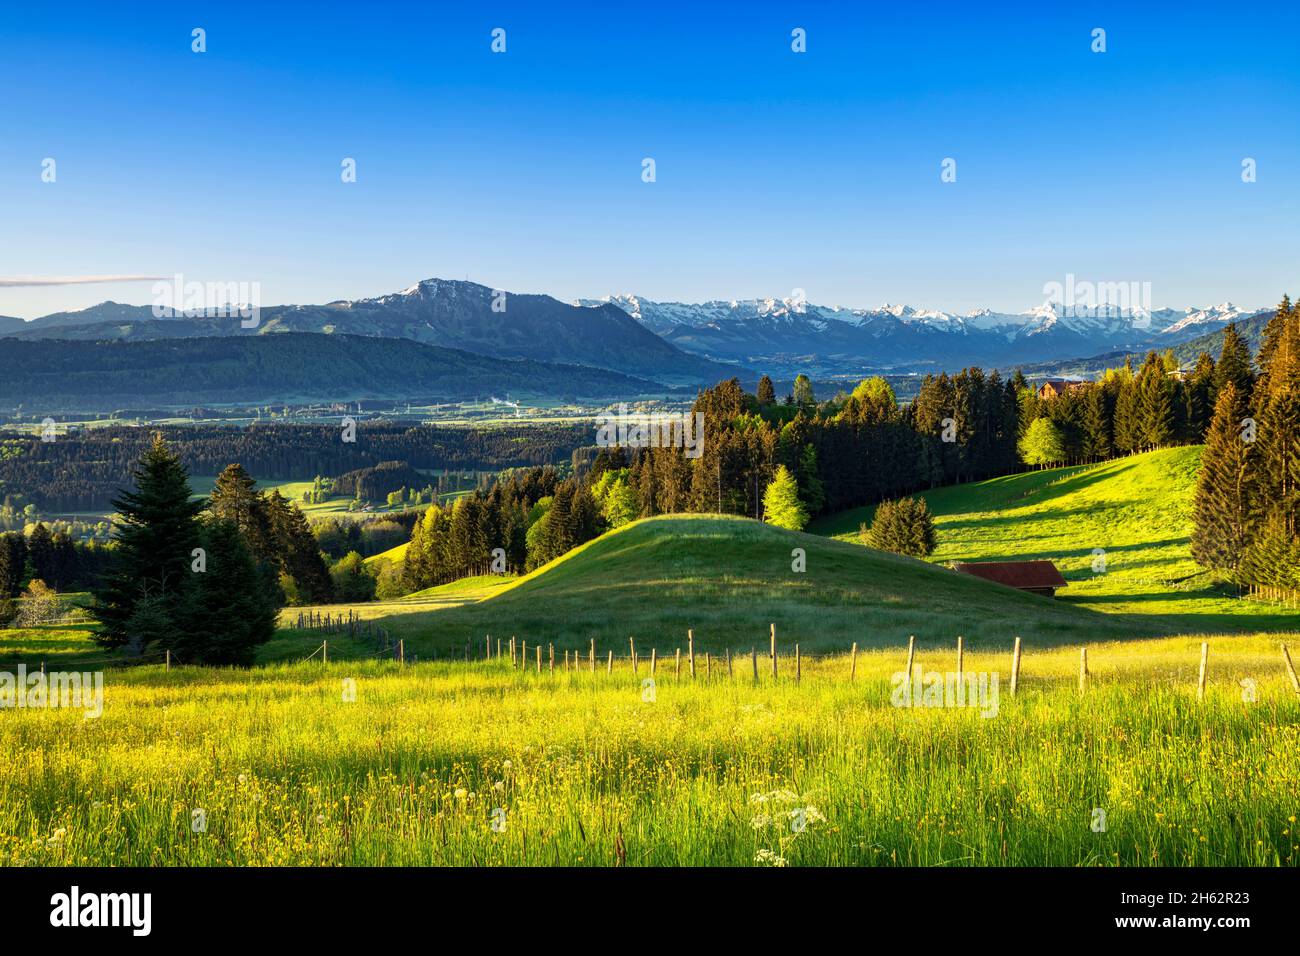 printemps dans l'allgäu. vue sur l'illertal aux alpes de l'allgäu avec les grünten. prairies, forêts et montagnes enneigées sous un ciel bleu. bavière, allemagne, europe Banque D'Images